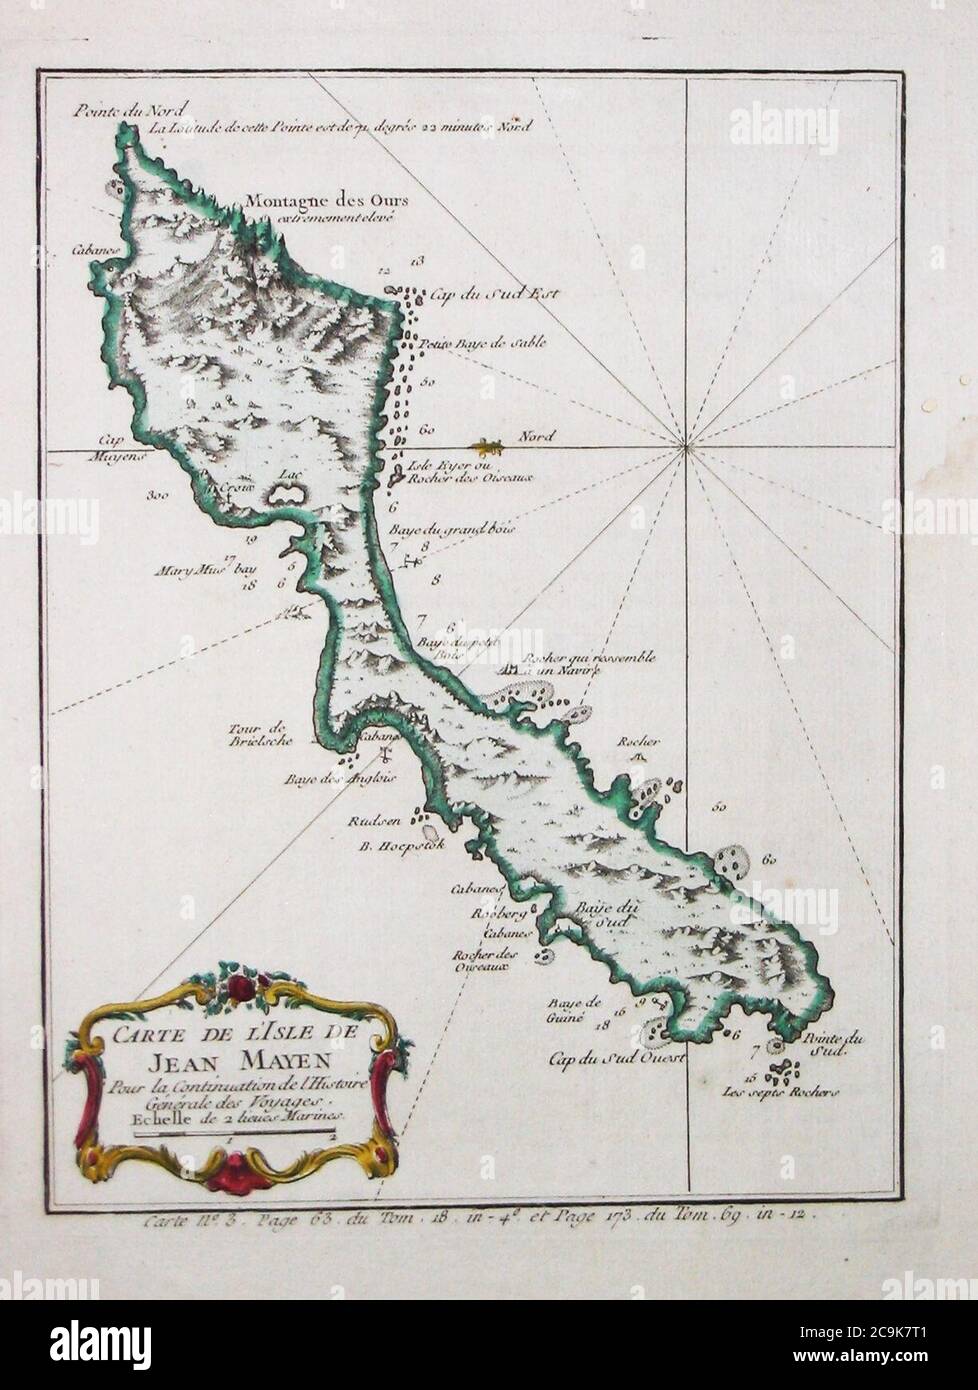 Jan Mayen map by Jacques-Nicolas Bellin 1760. Stock Photo